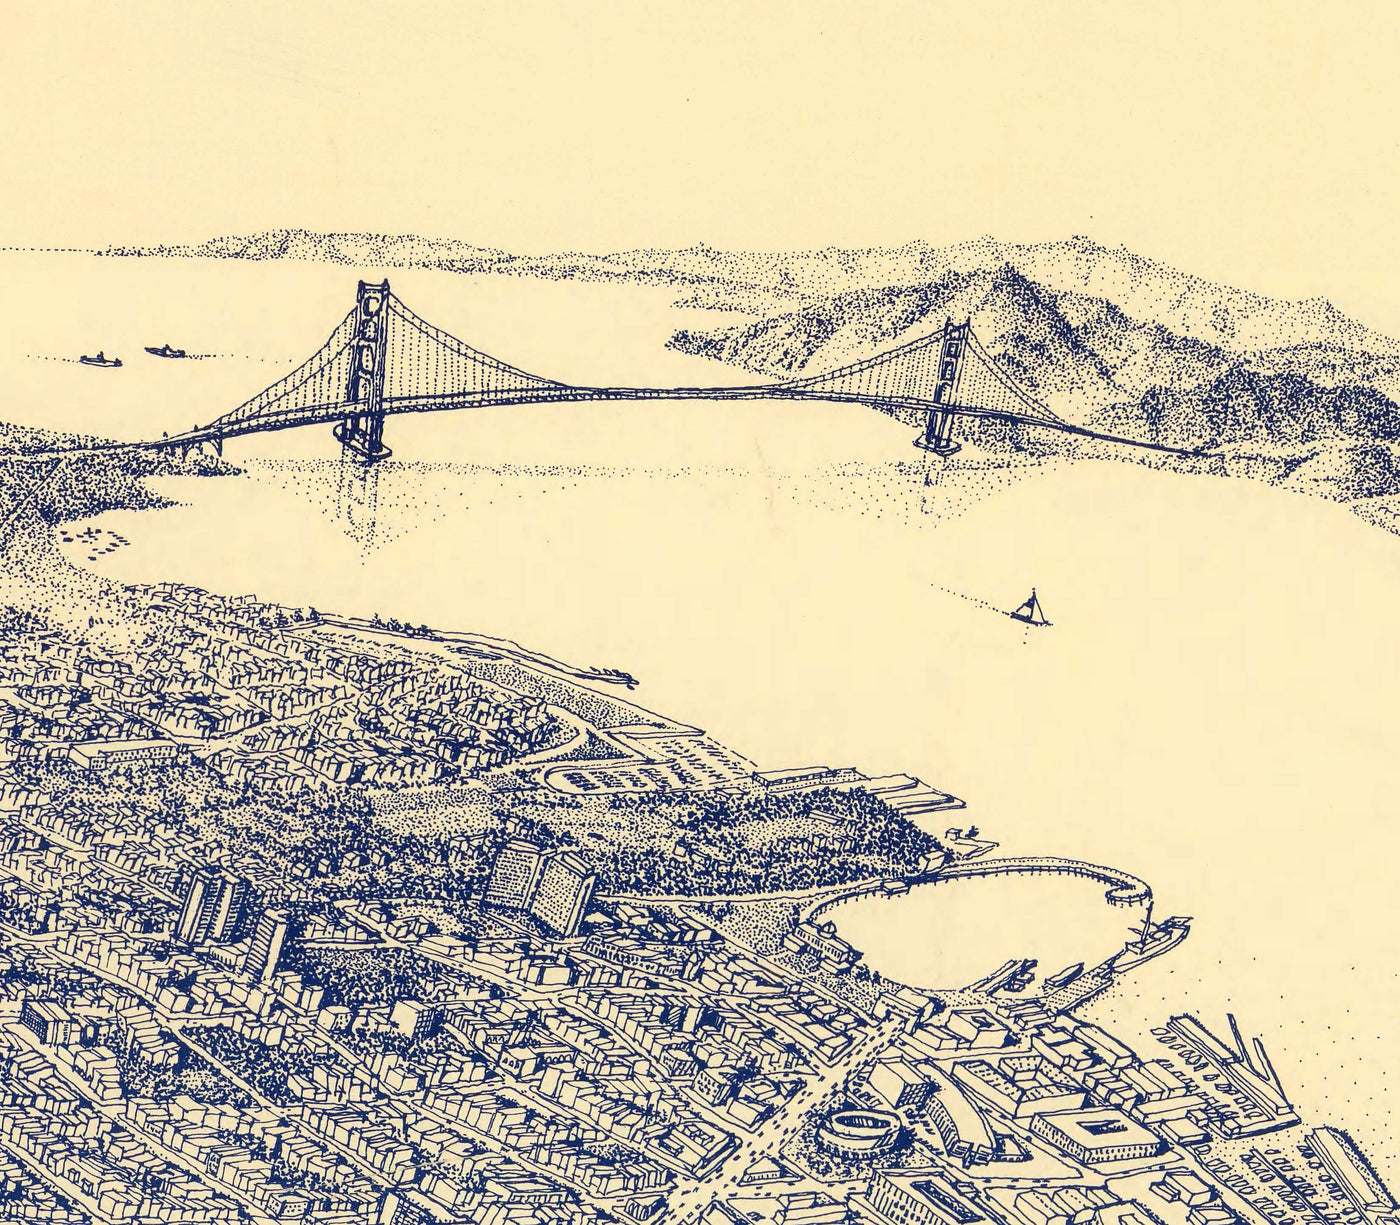 Vieux oiseaux Carte des yeux de San Francisco en 1982 - Gratte-ciel de la baie, Golden Gate Bridge, District financier, Nob Hill